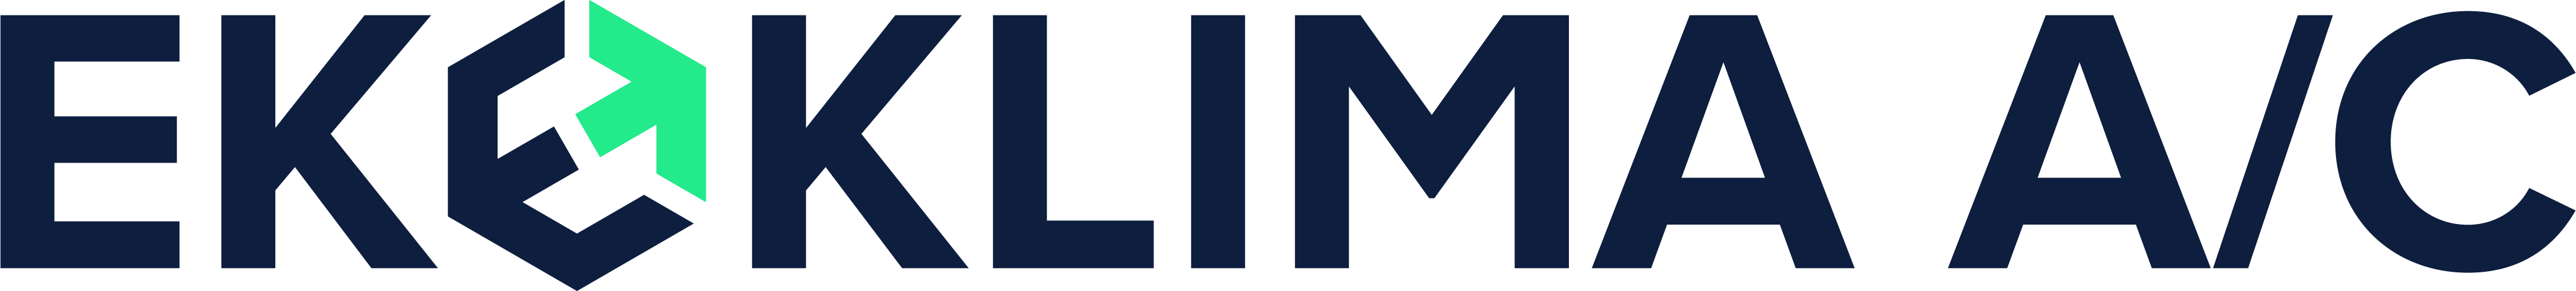 ekoklima logo